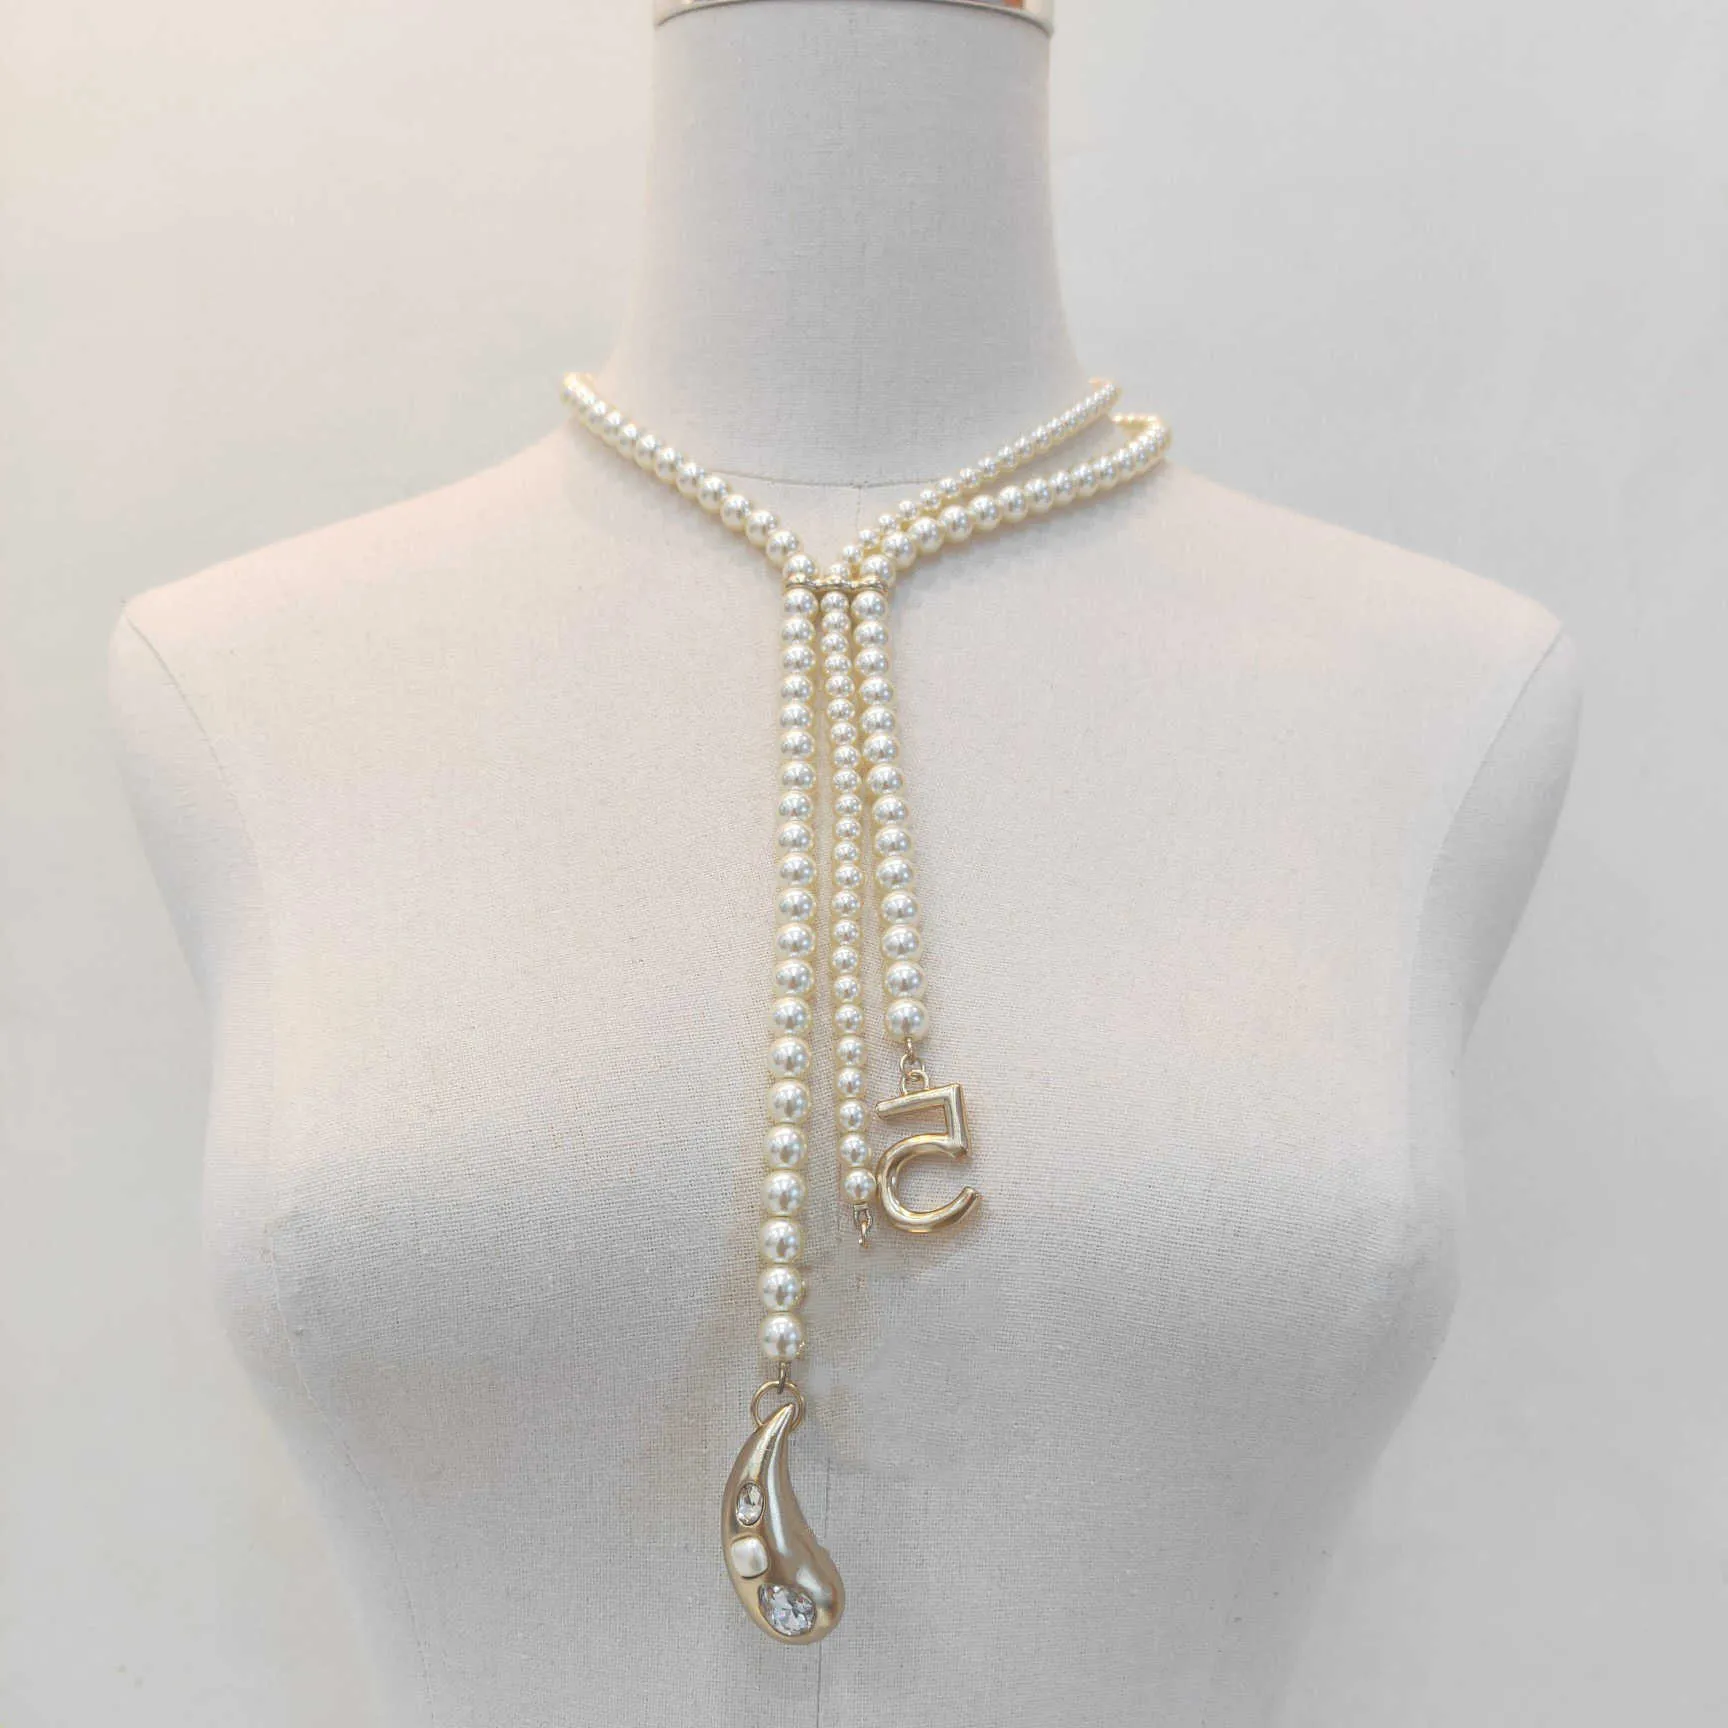 2021 Ny varmt märke mode smycken för kvinnor pärlor kedja party light guld färghartsvatten droppe charm kristall c 5 pendant het x0707